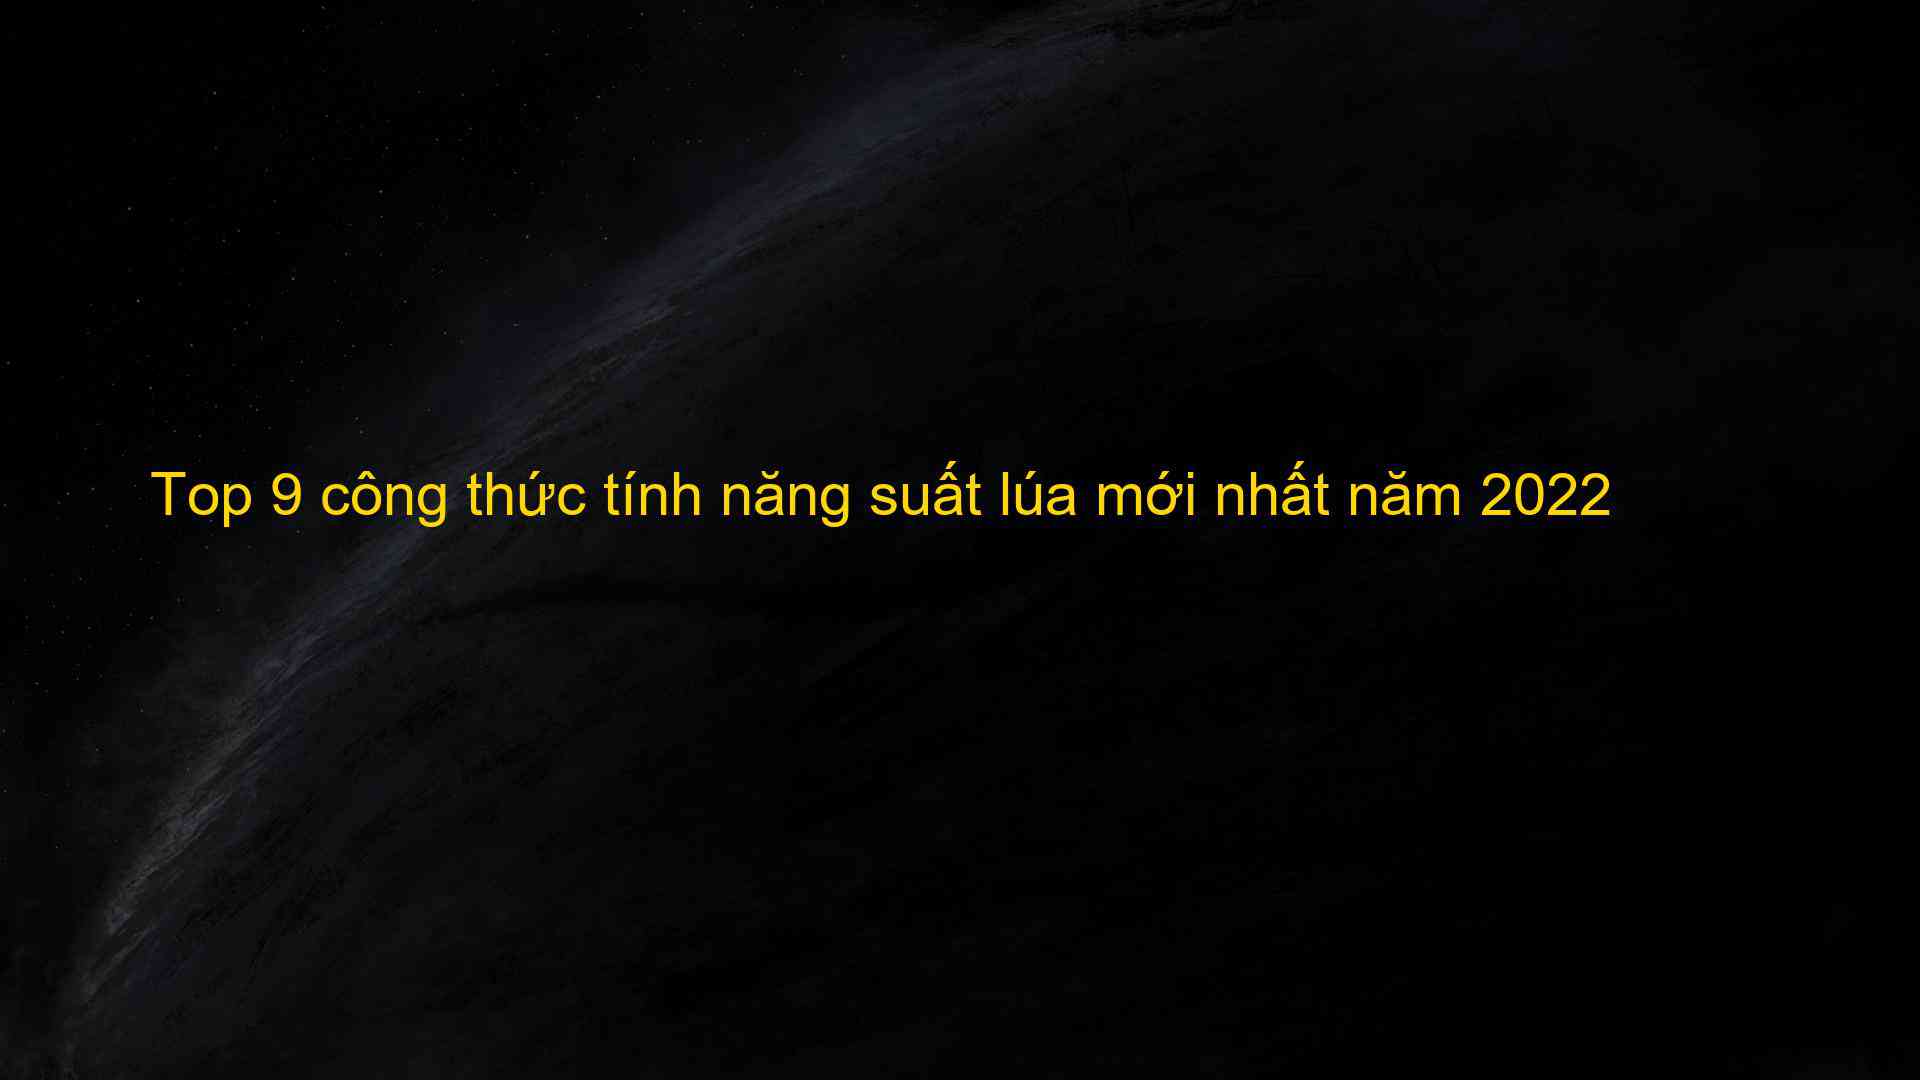 Top 9 cong thuc tinh nang suat lua moi nhat nam 2022 1659877528